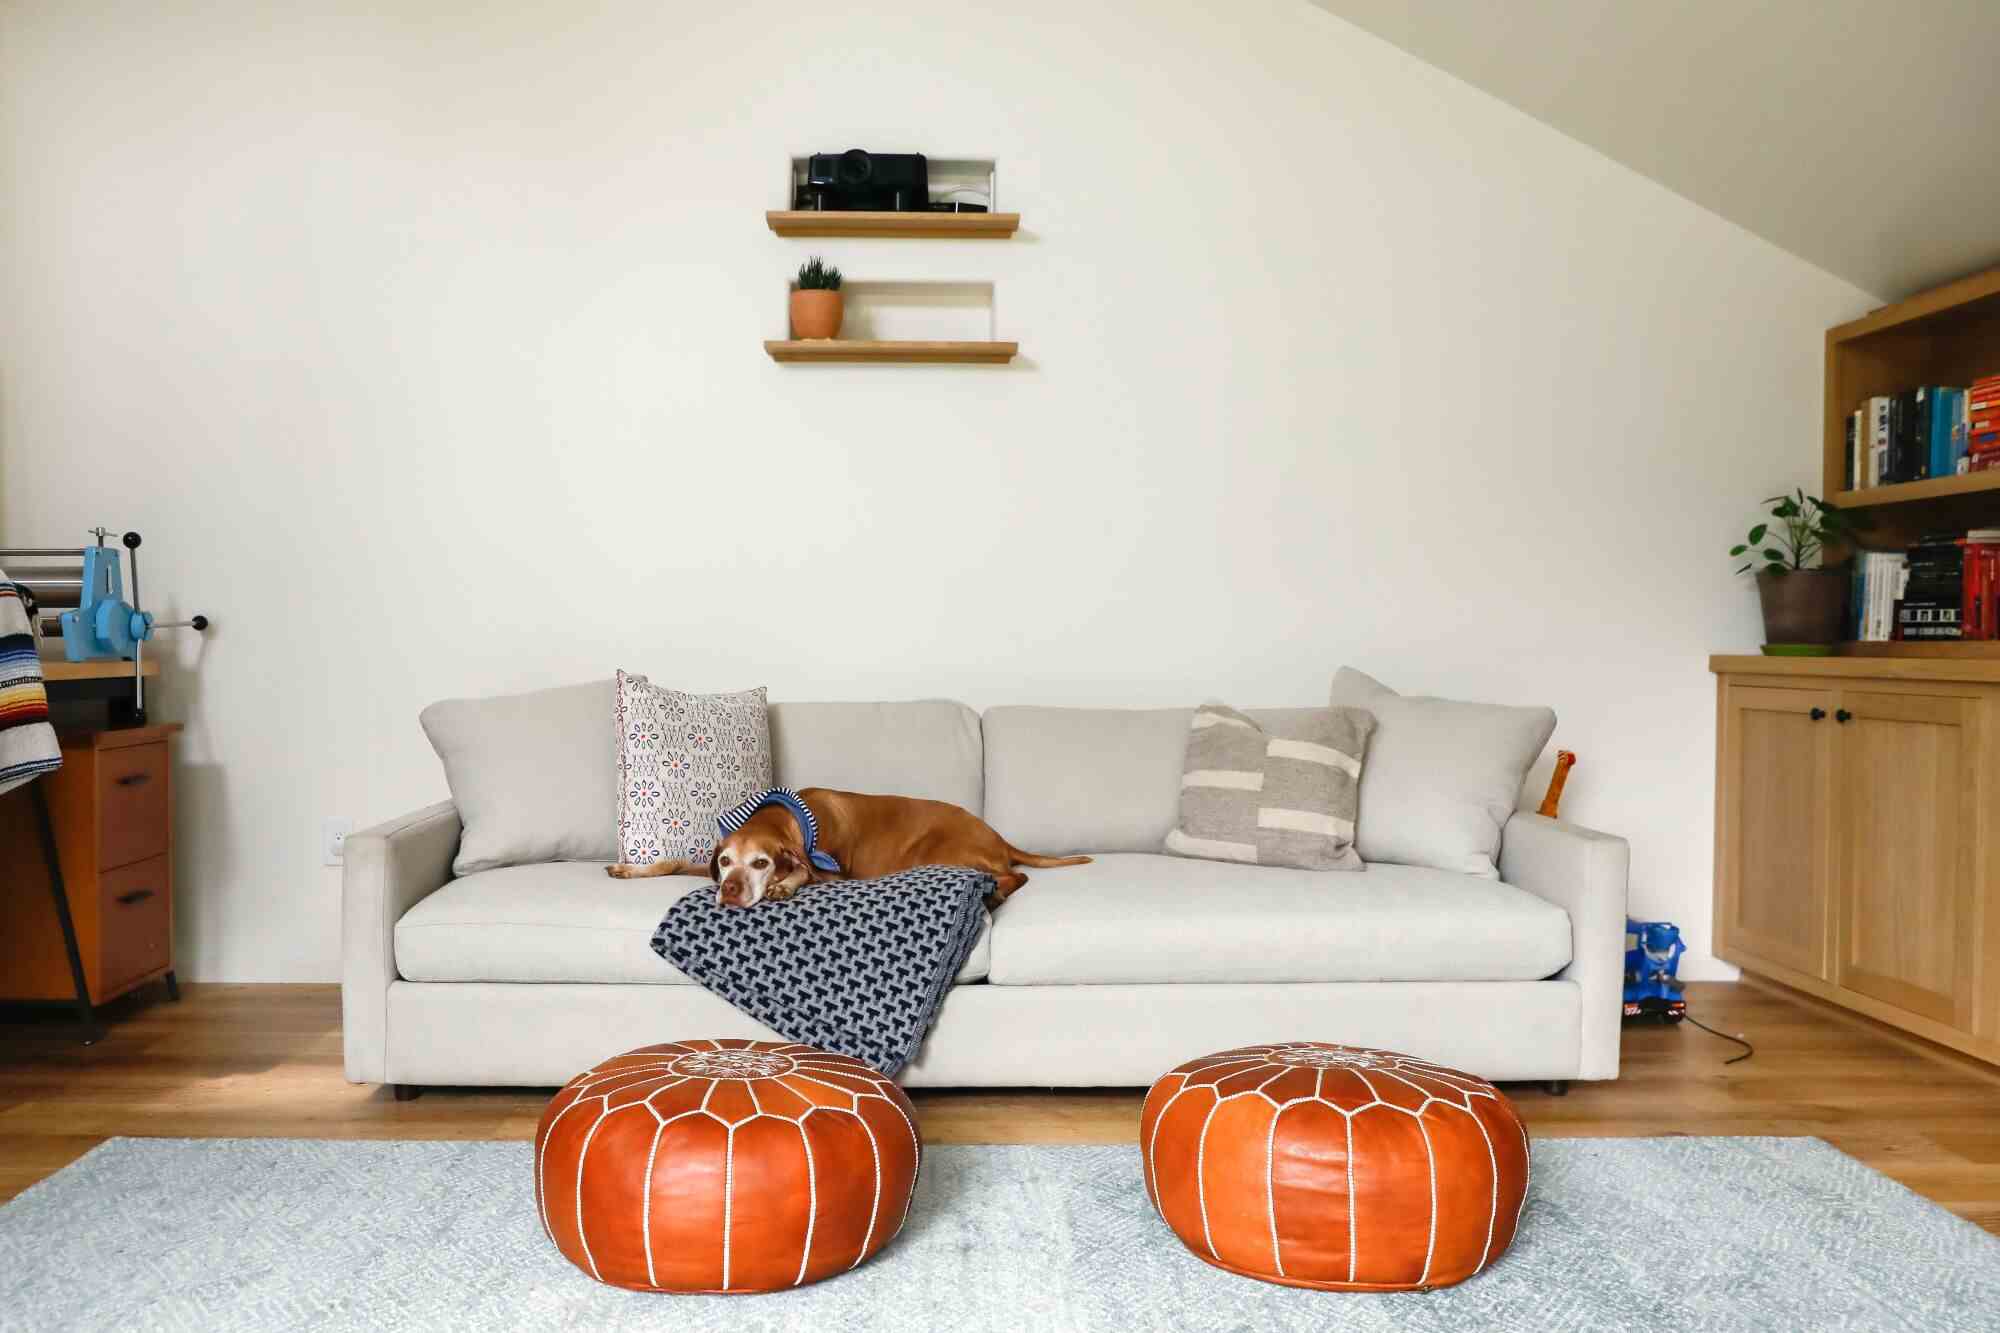 Ein Hund ruht auf einer Decke auf einer grauen Couch mit zwei braunen Lederhockern davor